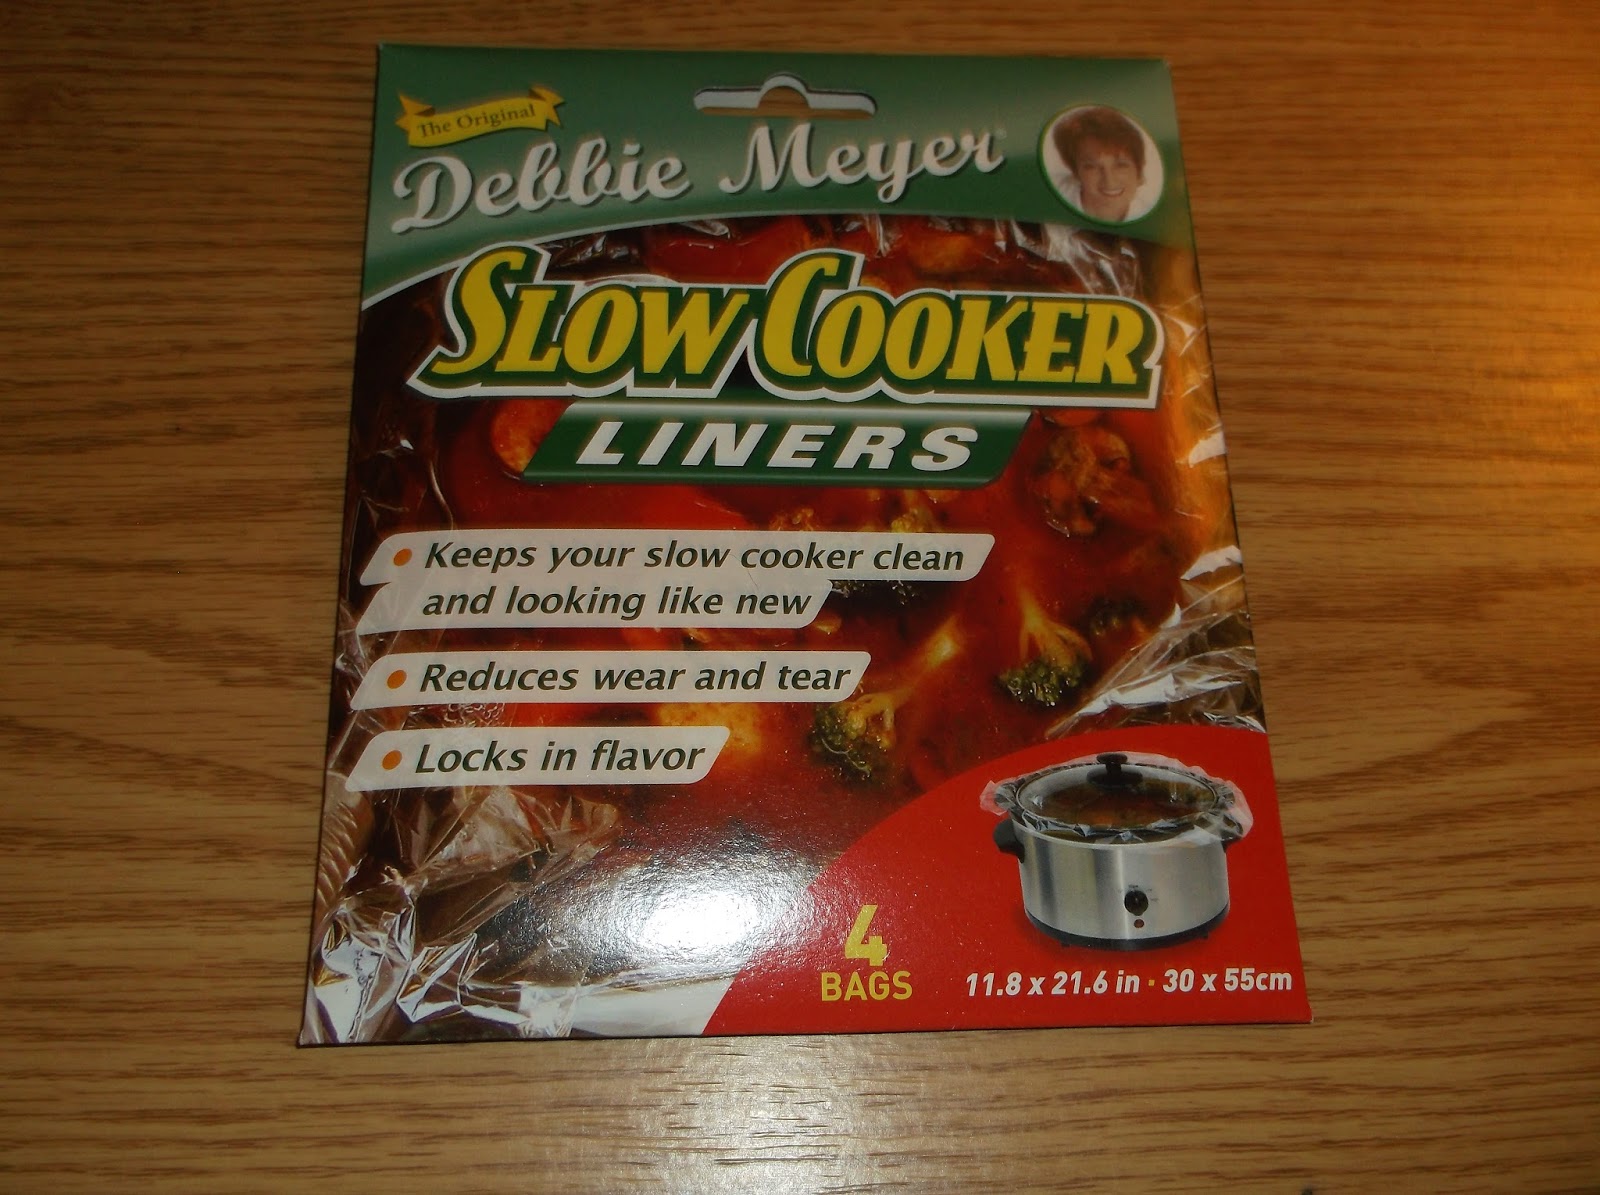 Debbie Meyer Slow Cooker Liners